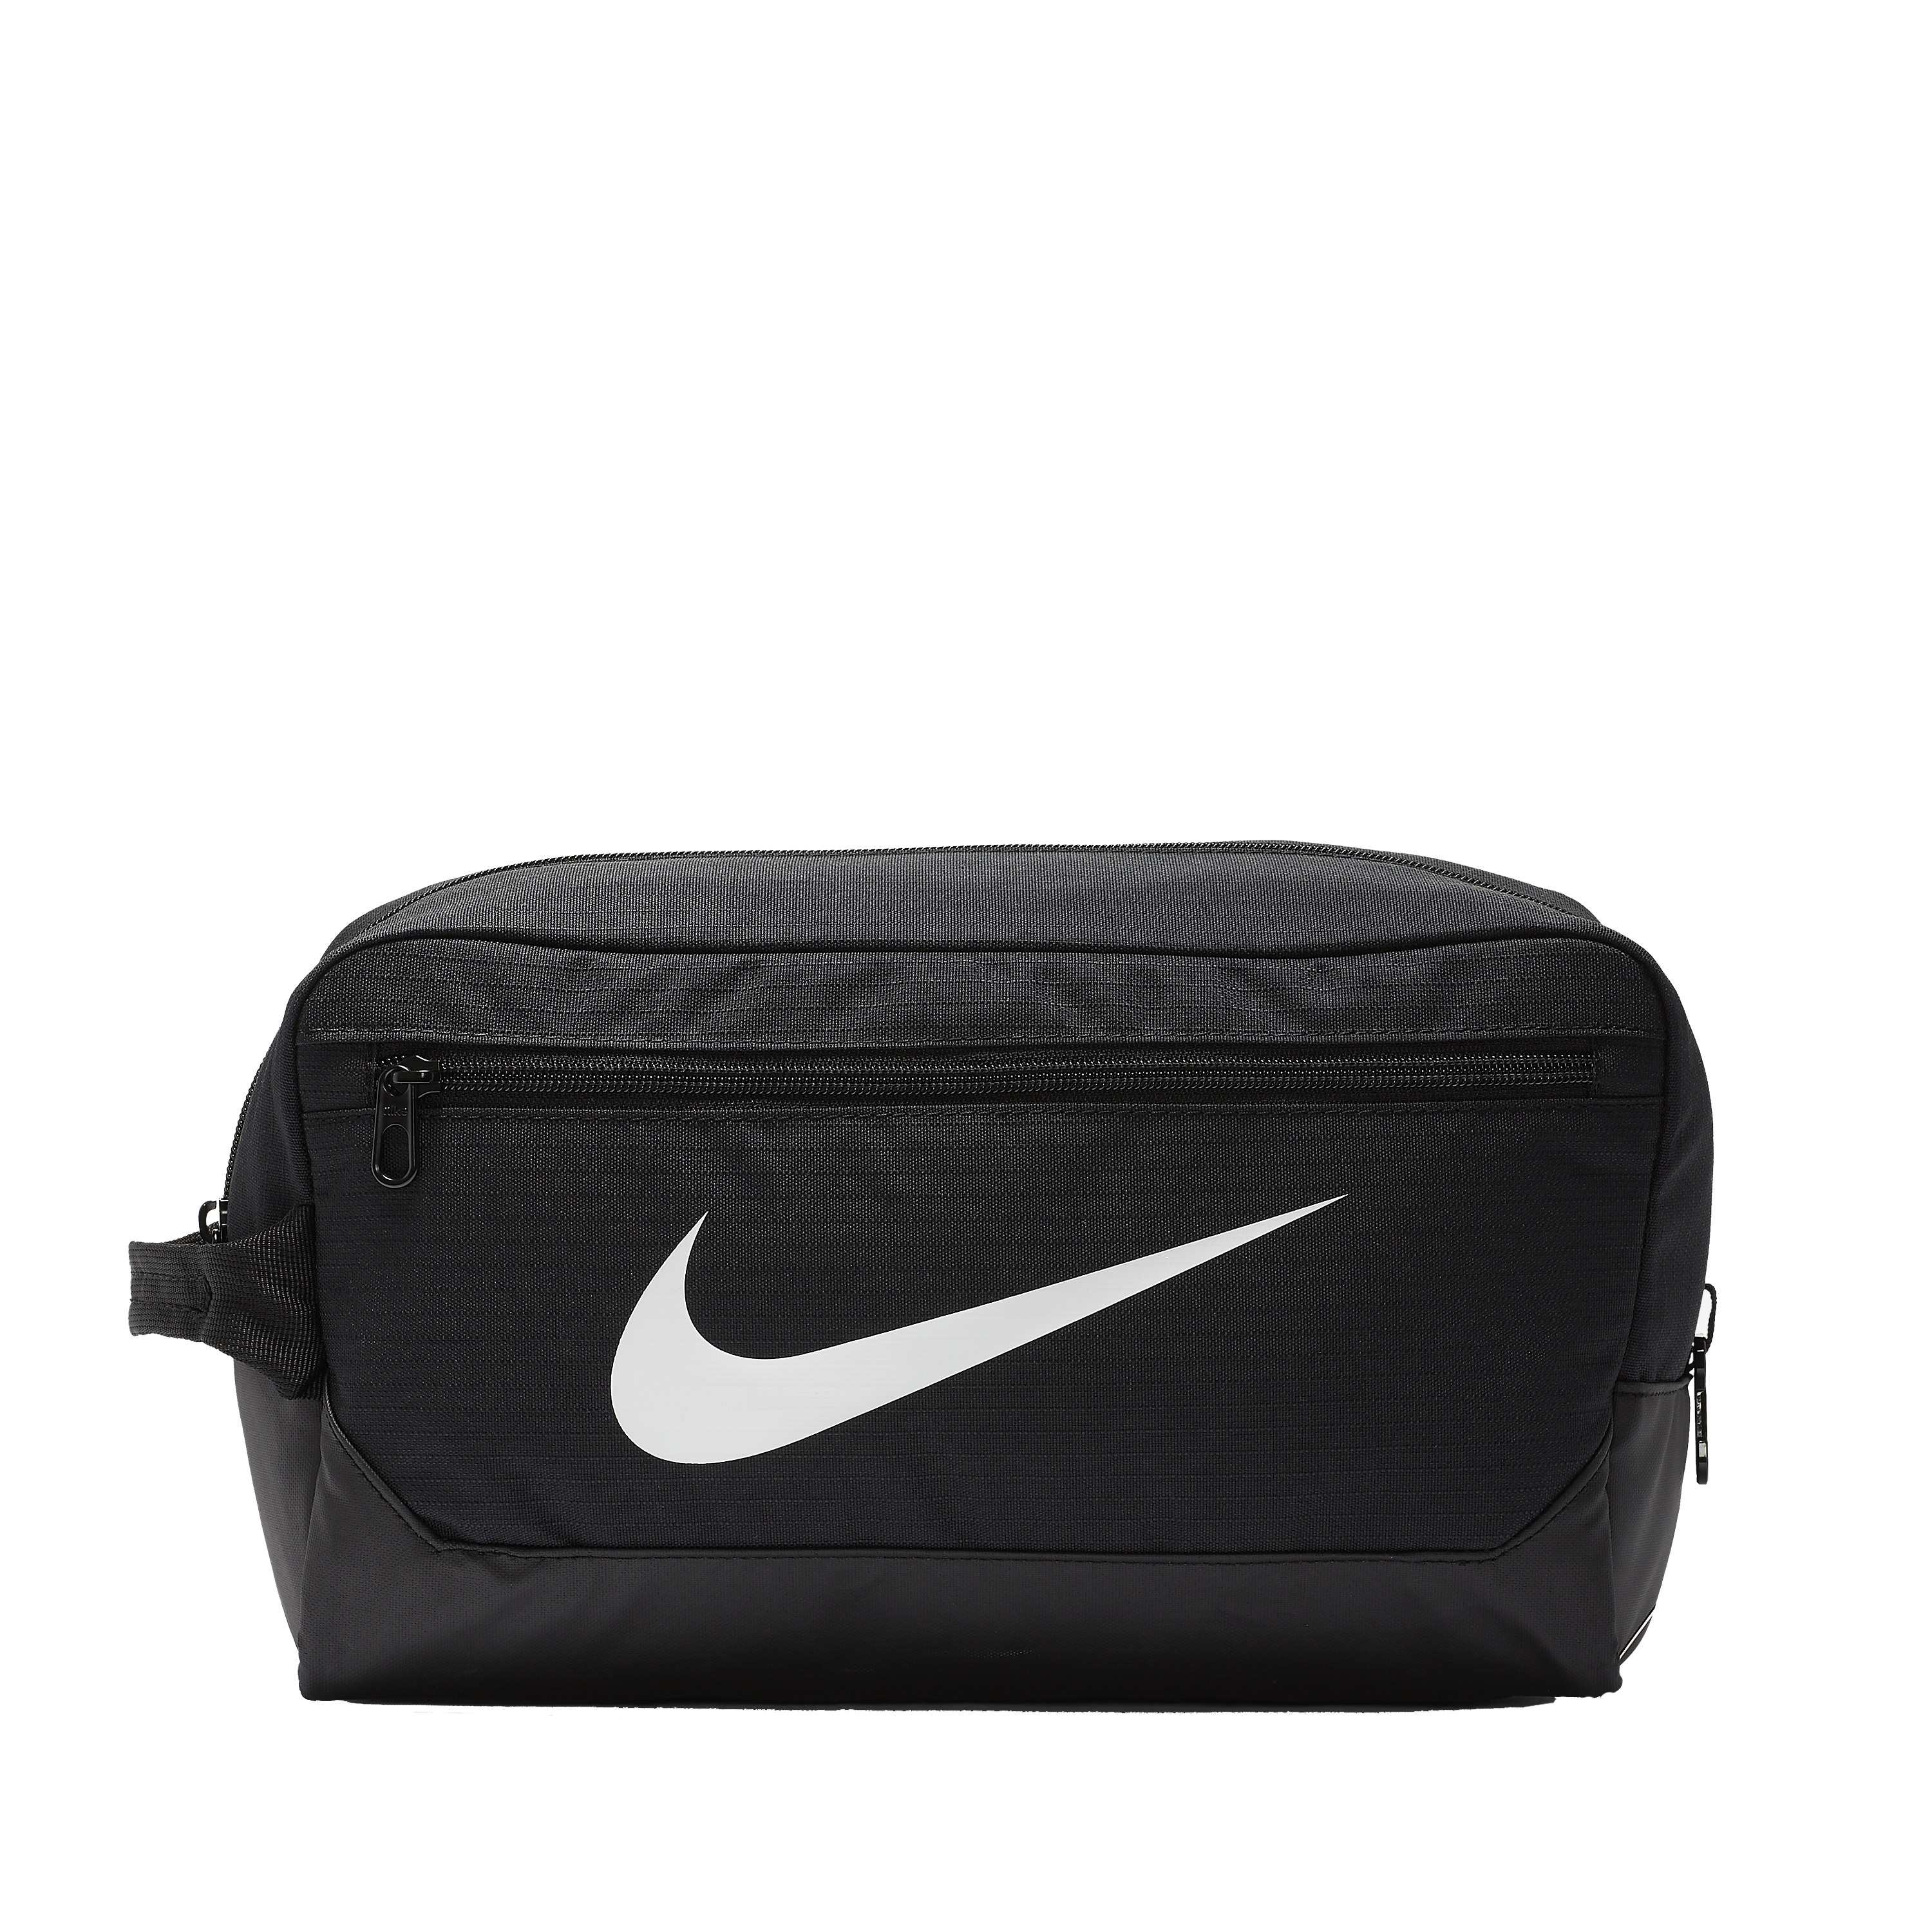 Nike Brasilia Bolsa de Tenis para Zapatillas - Black/White